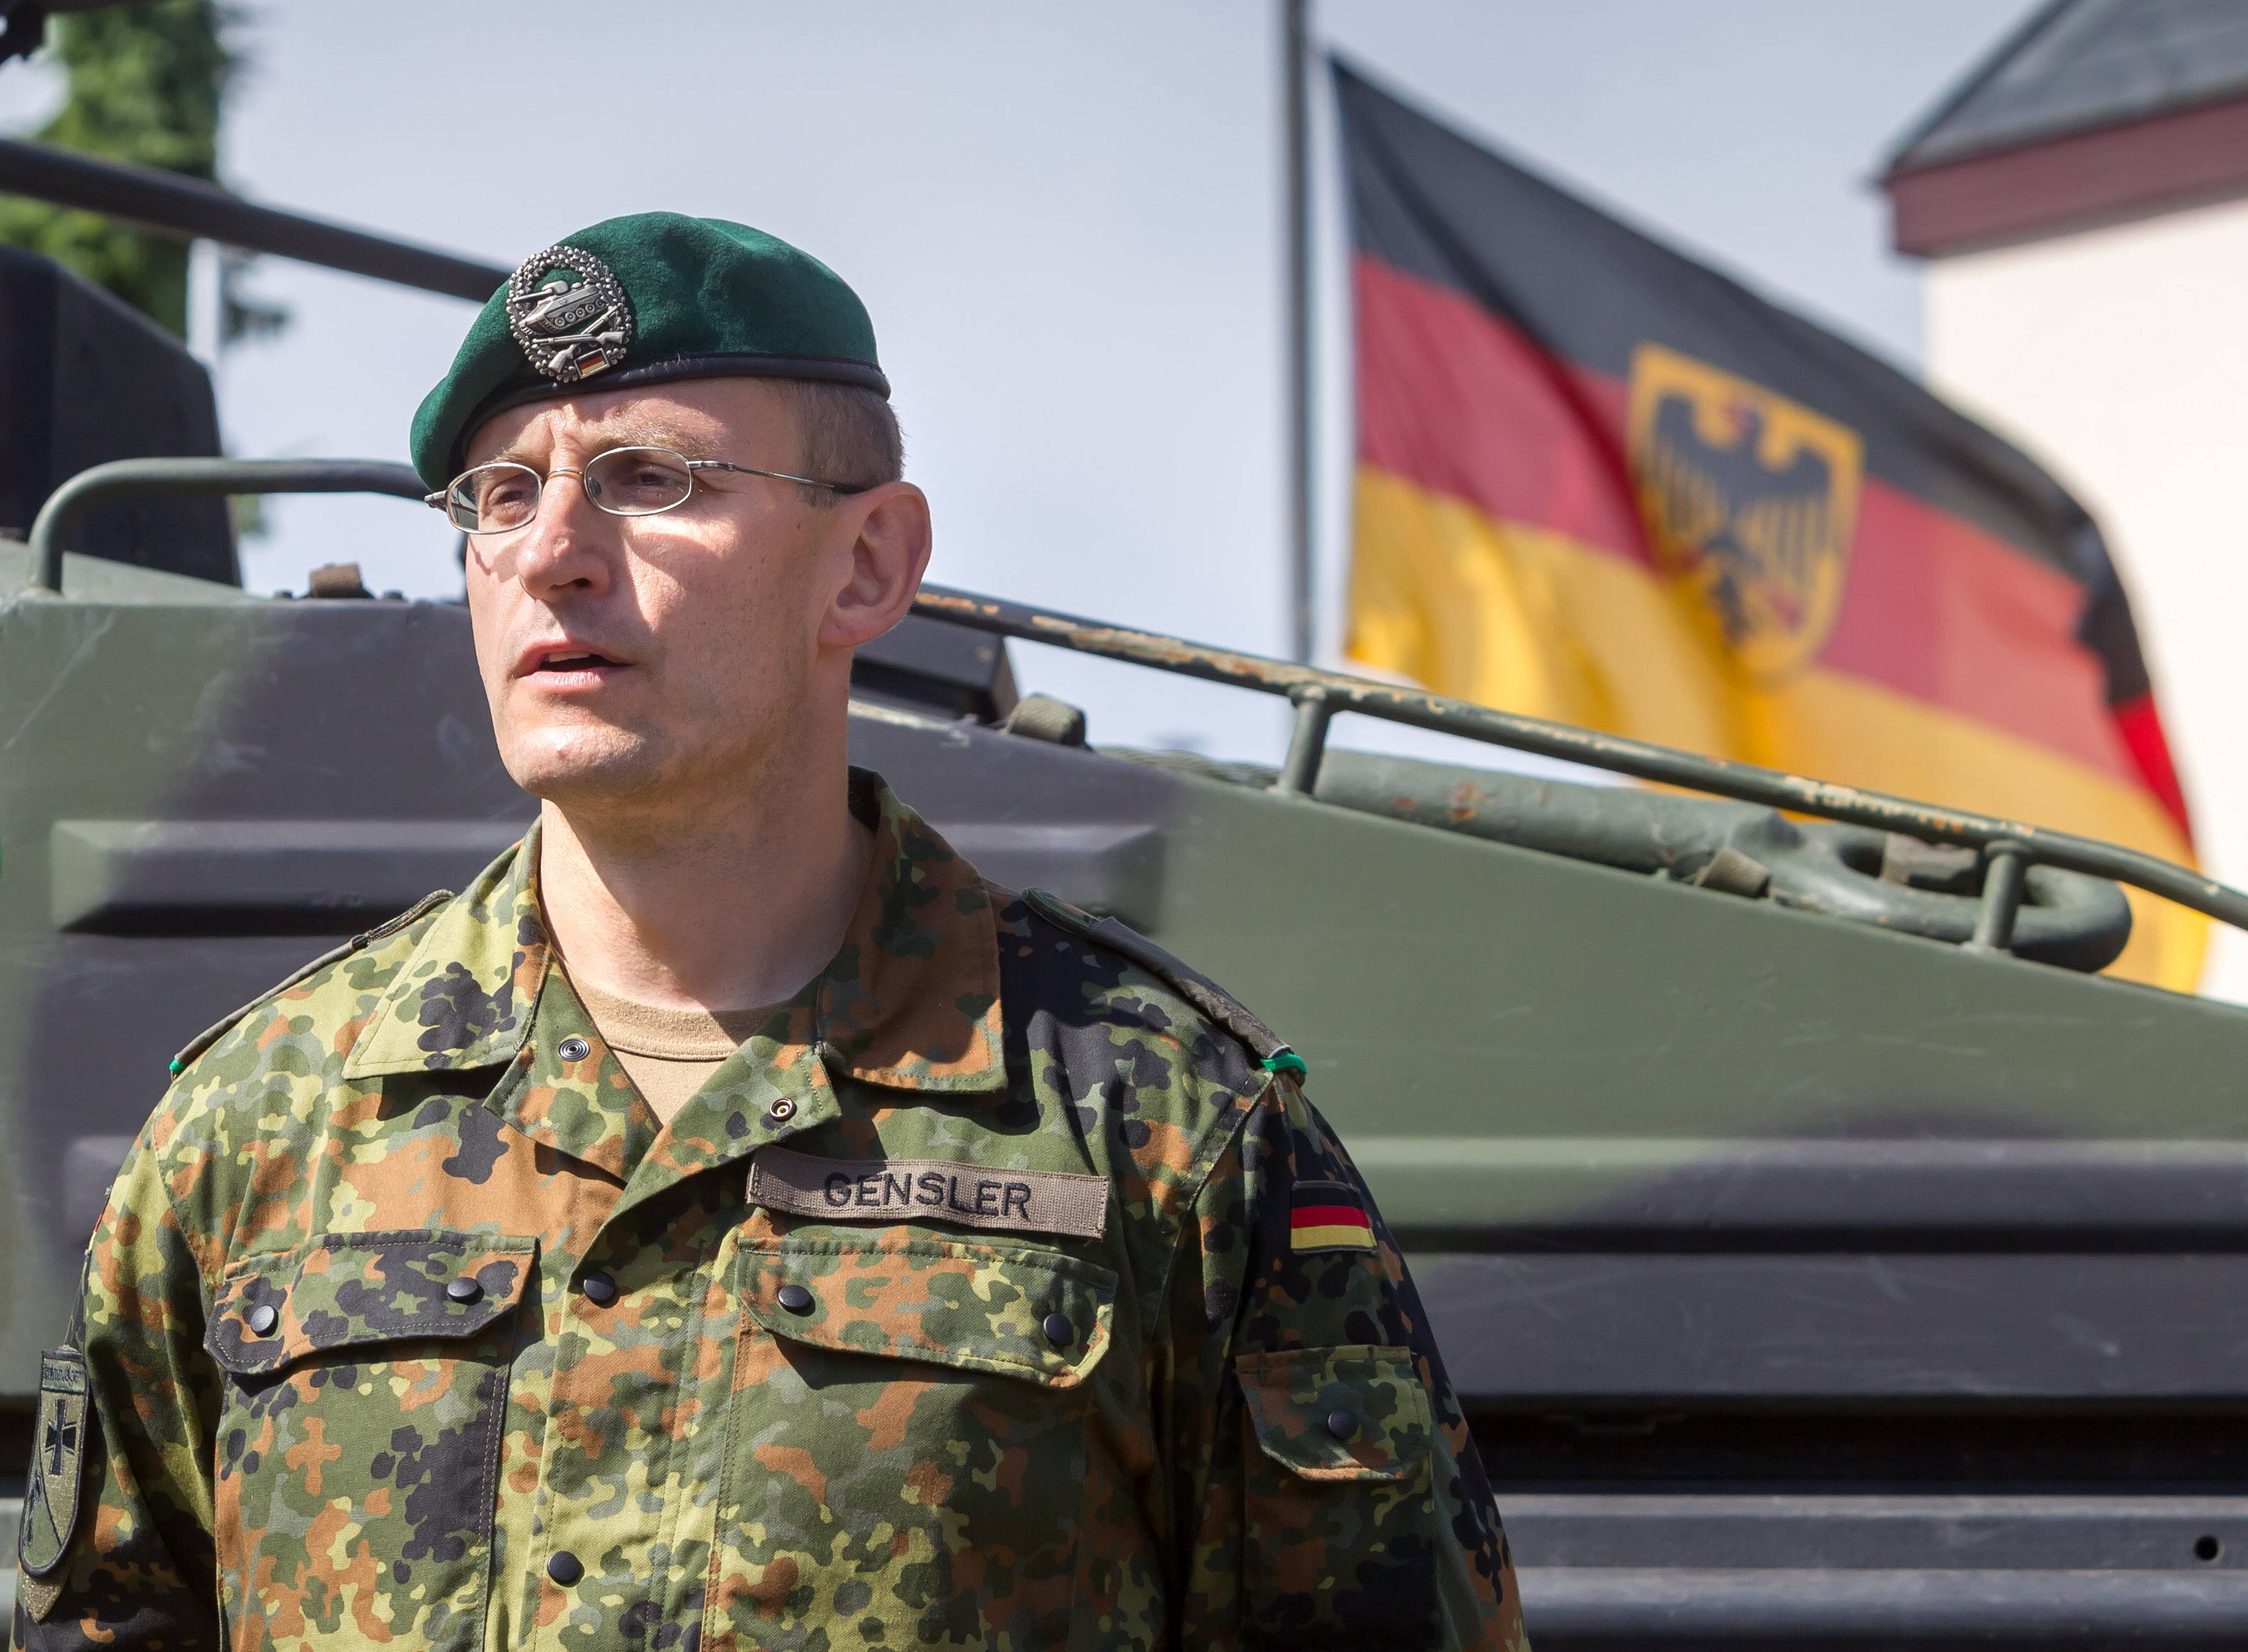 Bundeswehr fehlen sogar Hosen! Wehrbeauftragte der Bundeswehr ist sauer - Munition für 20 Milliarden fehlt!